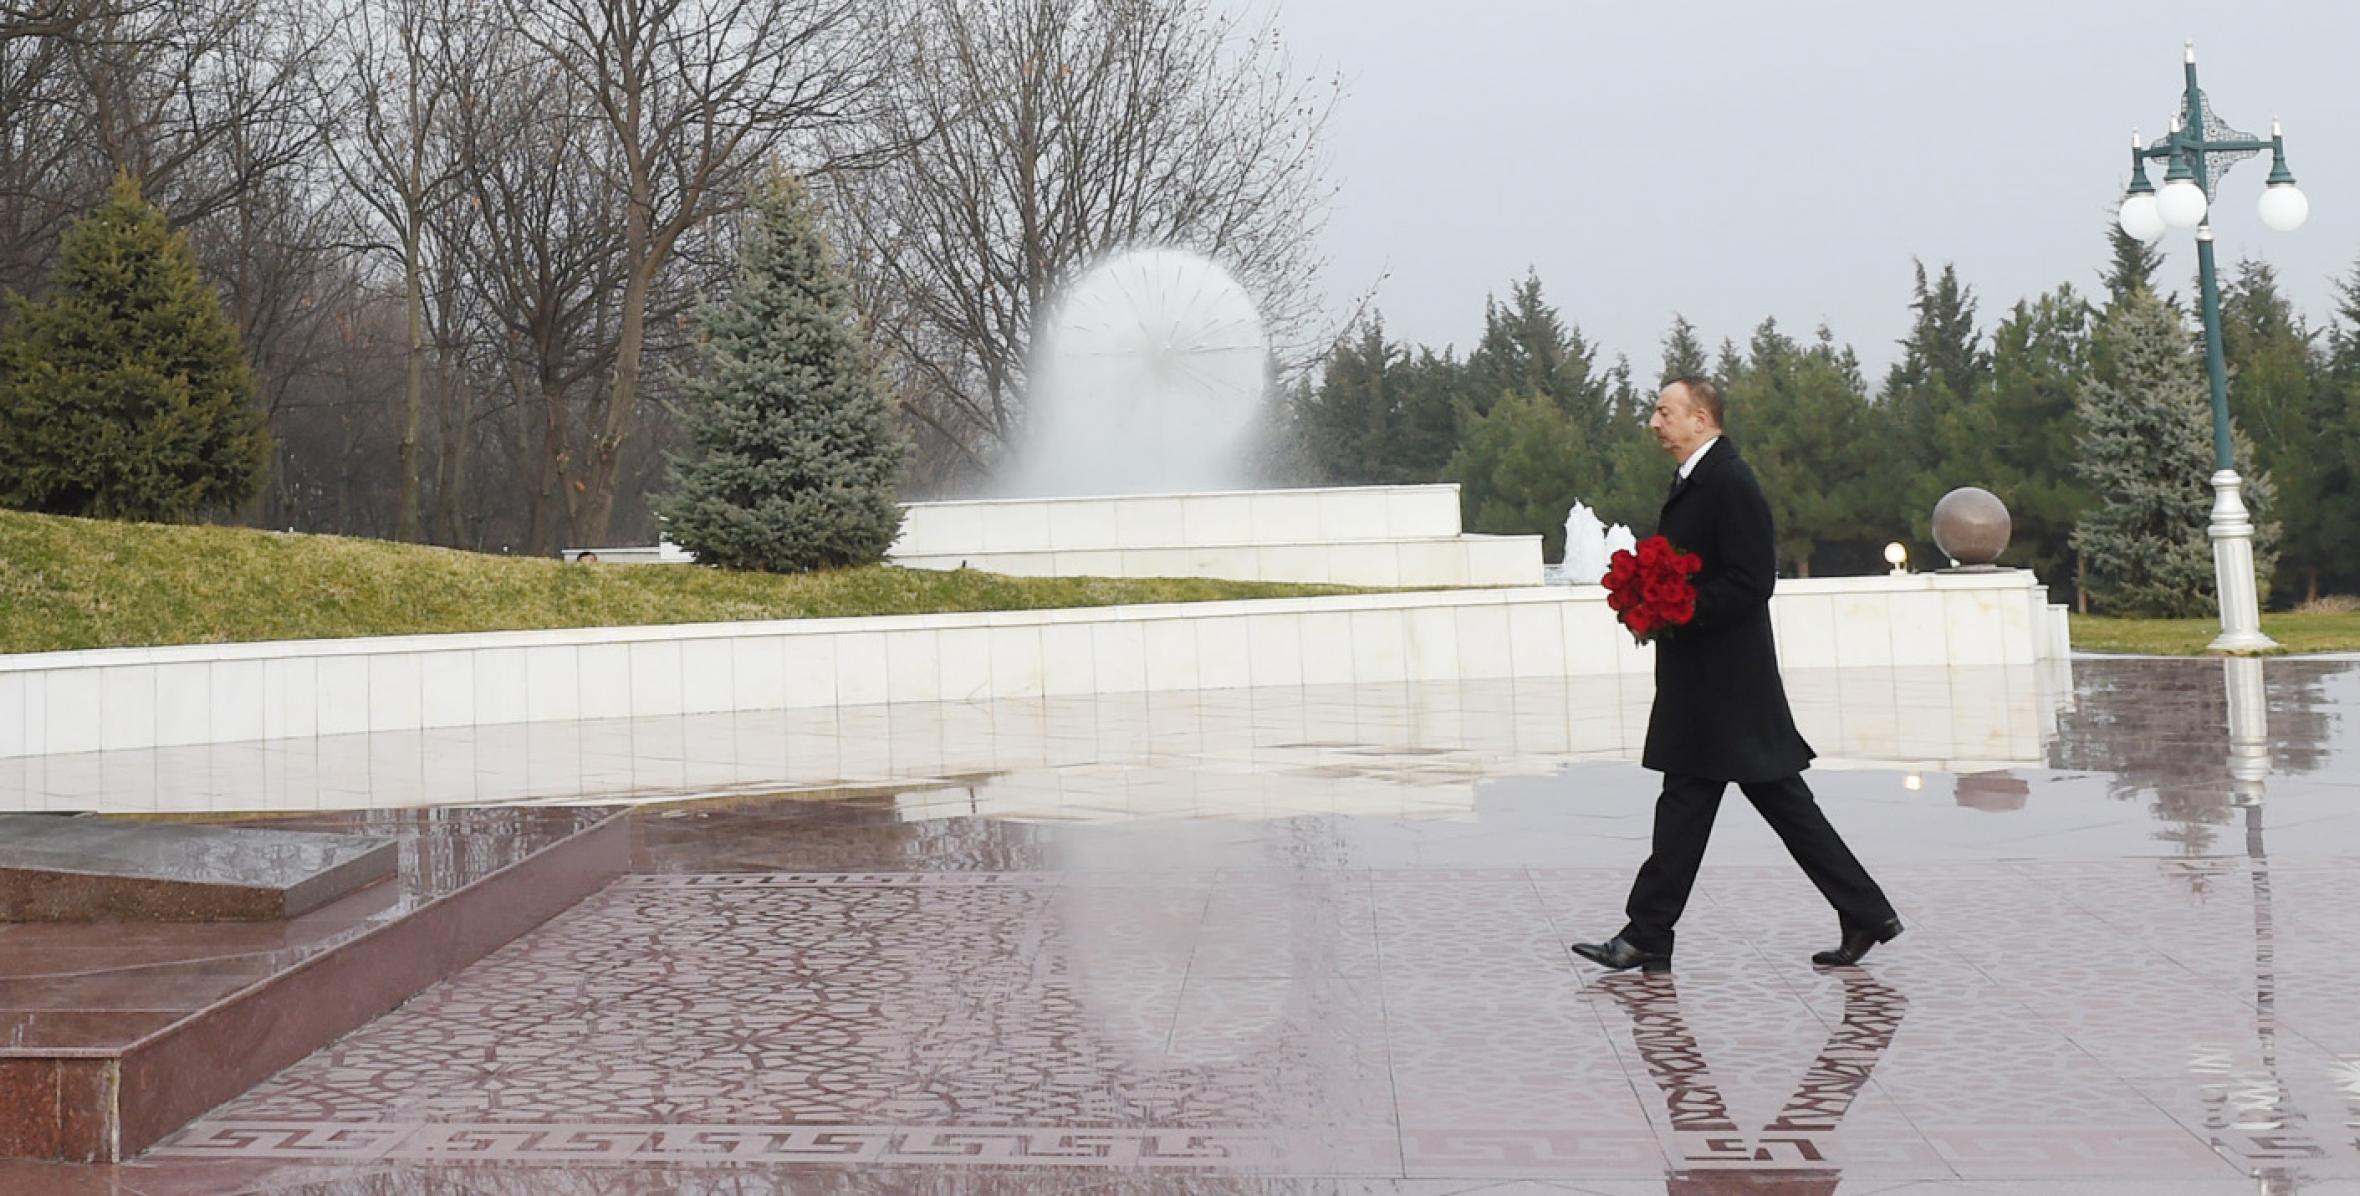 Ilham Aliyev visited statue of national leader Heydar Aliyev in Tovuz